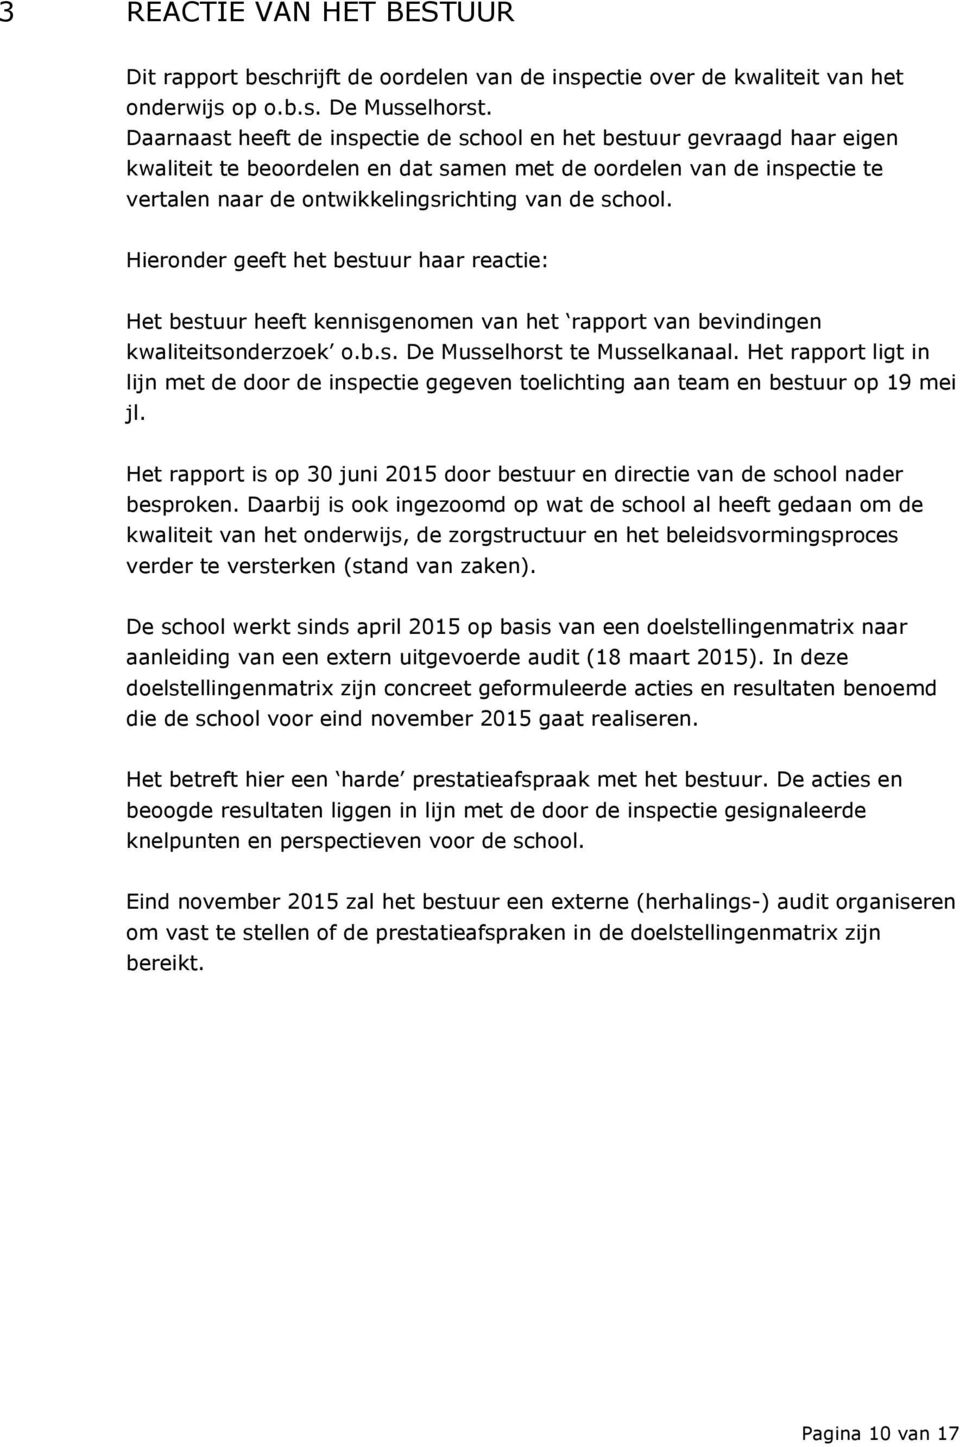 Hieronder geeft het bestuur haar reactie: Het bestuur heeft kennisgenomen van het rapport van bevindingen kwaliteitsonderzoek o.b.s. De Musselhorst te Musselkanaal.